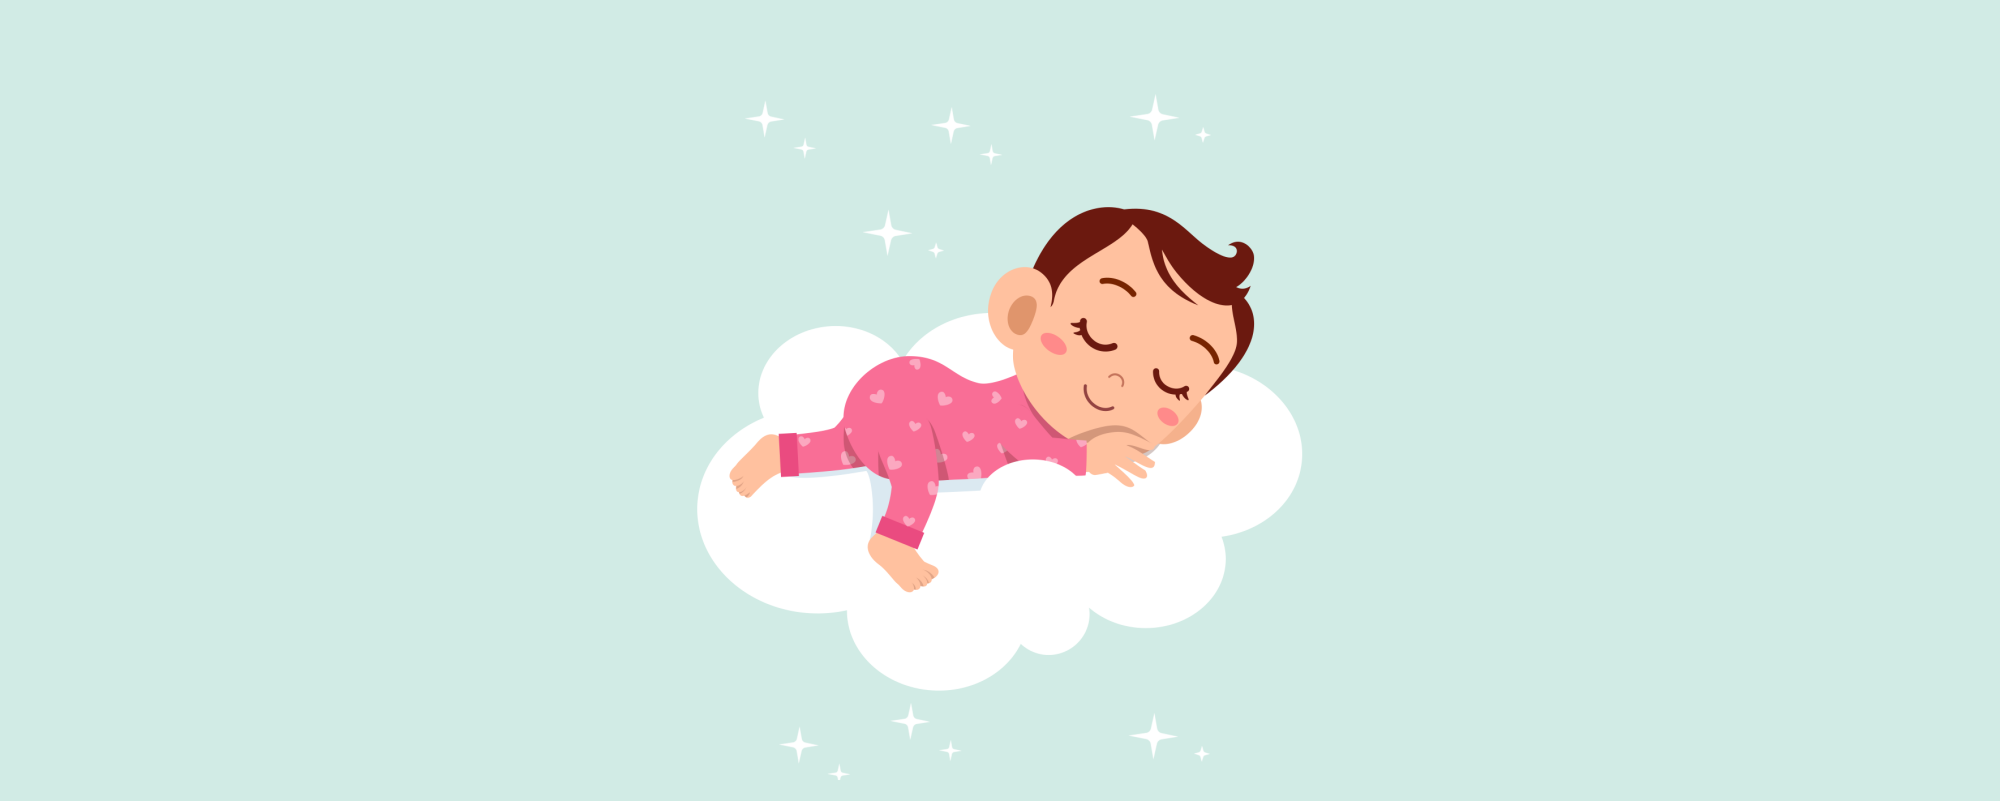 Giấc ngủ là nơi để con bạn tìm thấy sự yên bình và bên cạnh những giấc mơ tuyệt vời. Xem hình ảnh liên quan để tìm hiểu thêm về giấc ngủ của trẻ nhỏ.